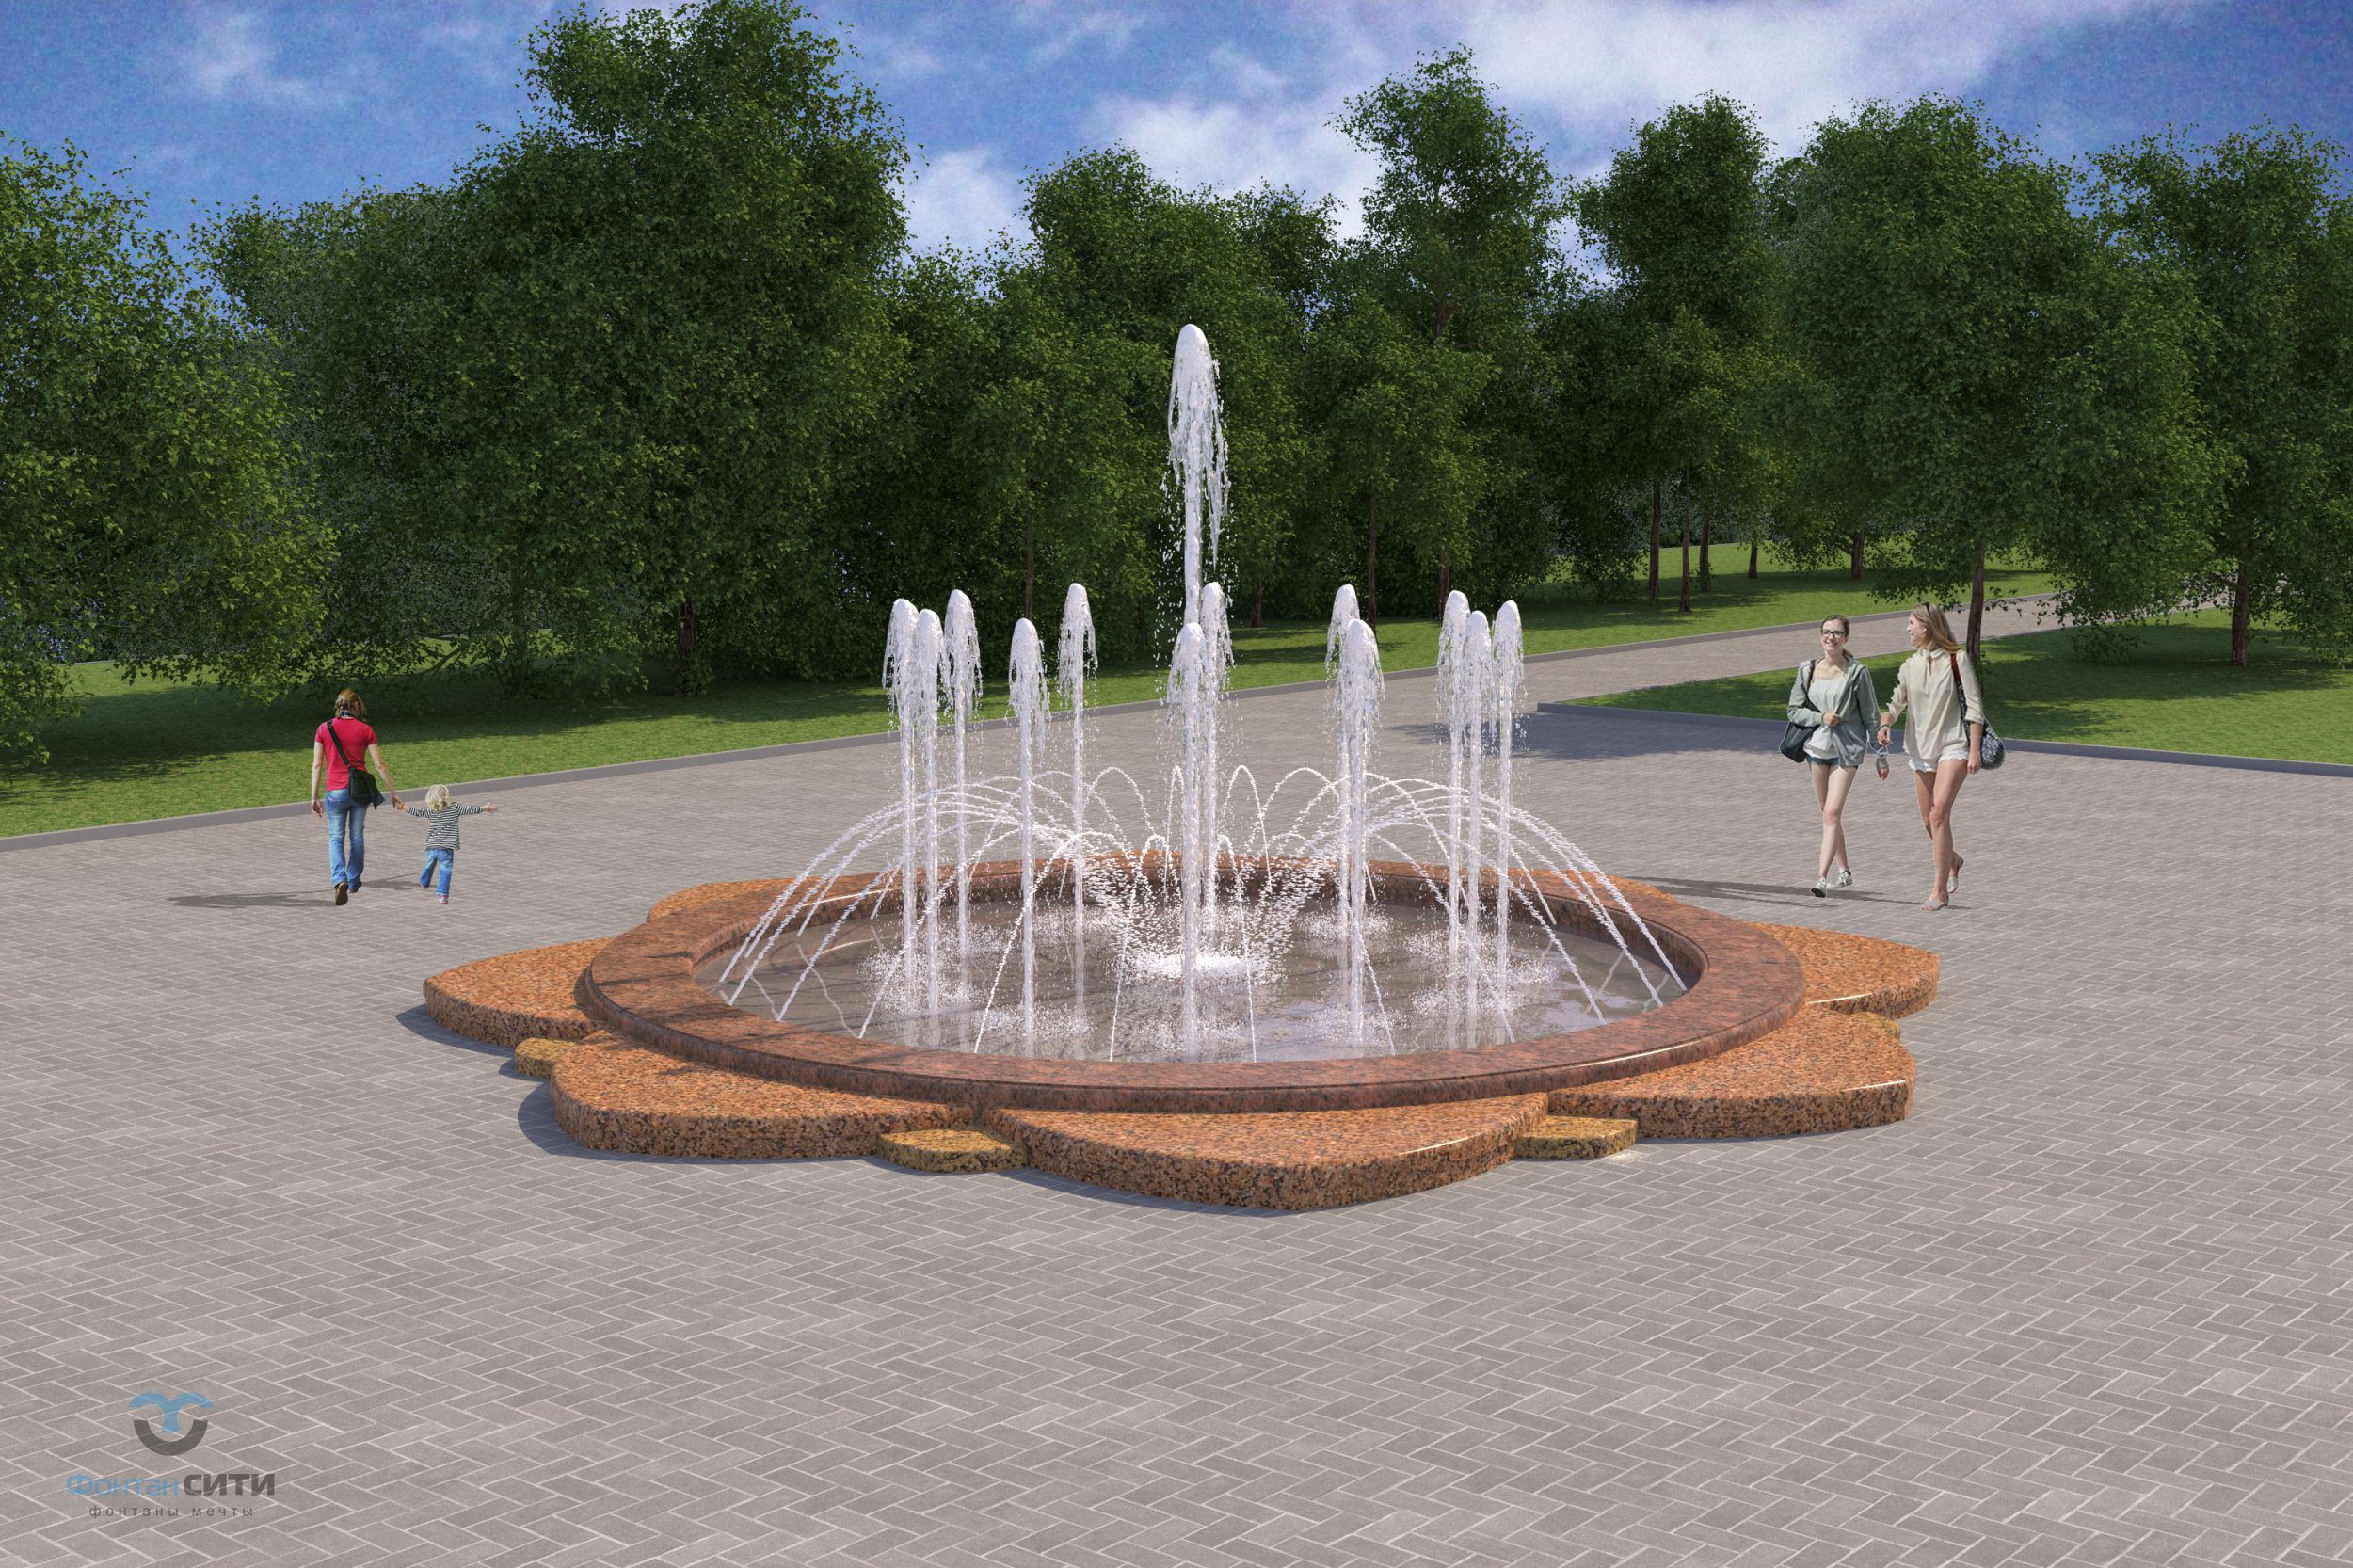 Проект Парковый фонтан из гранита г. Саратов Фонтан СИТИ Тел: 8-800-234-5405